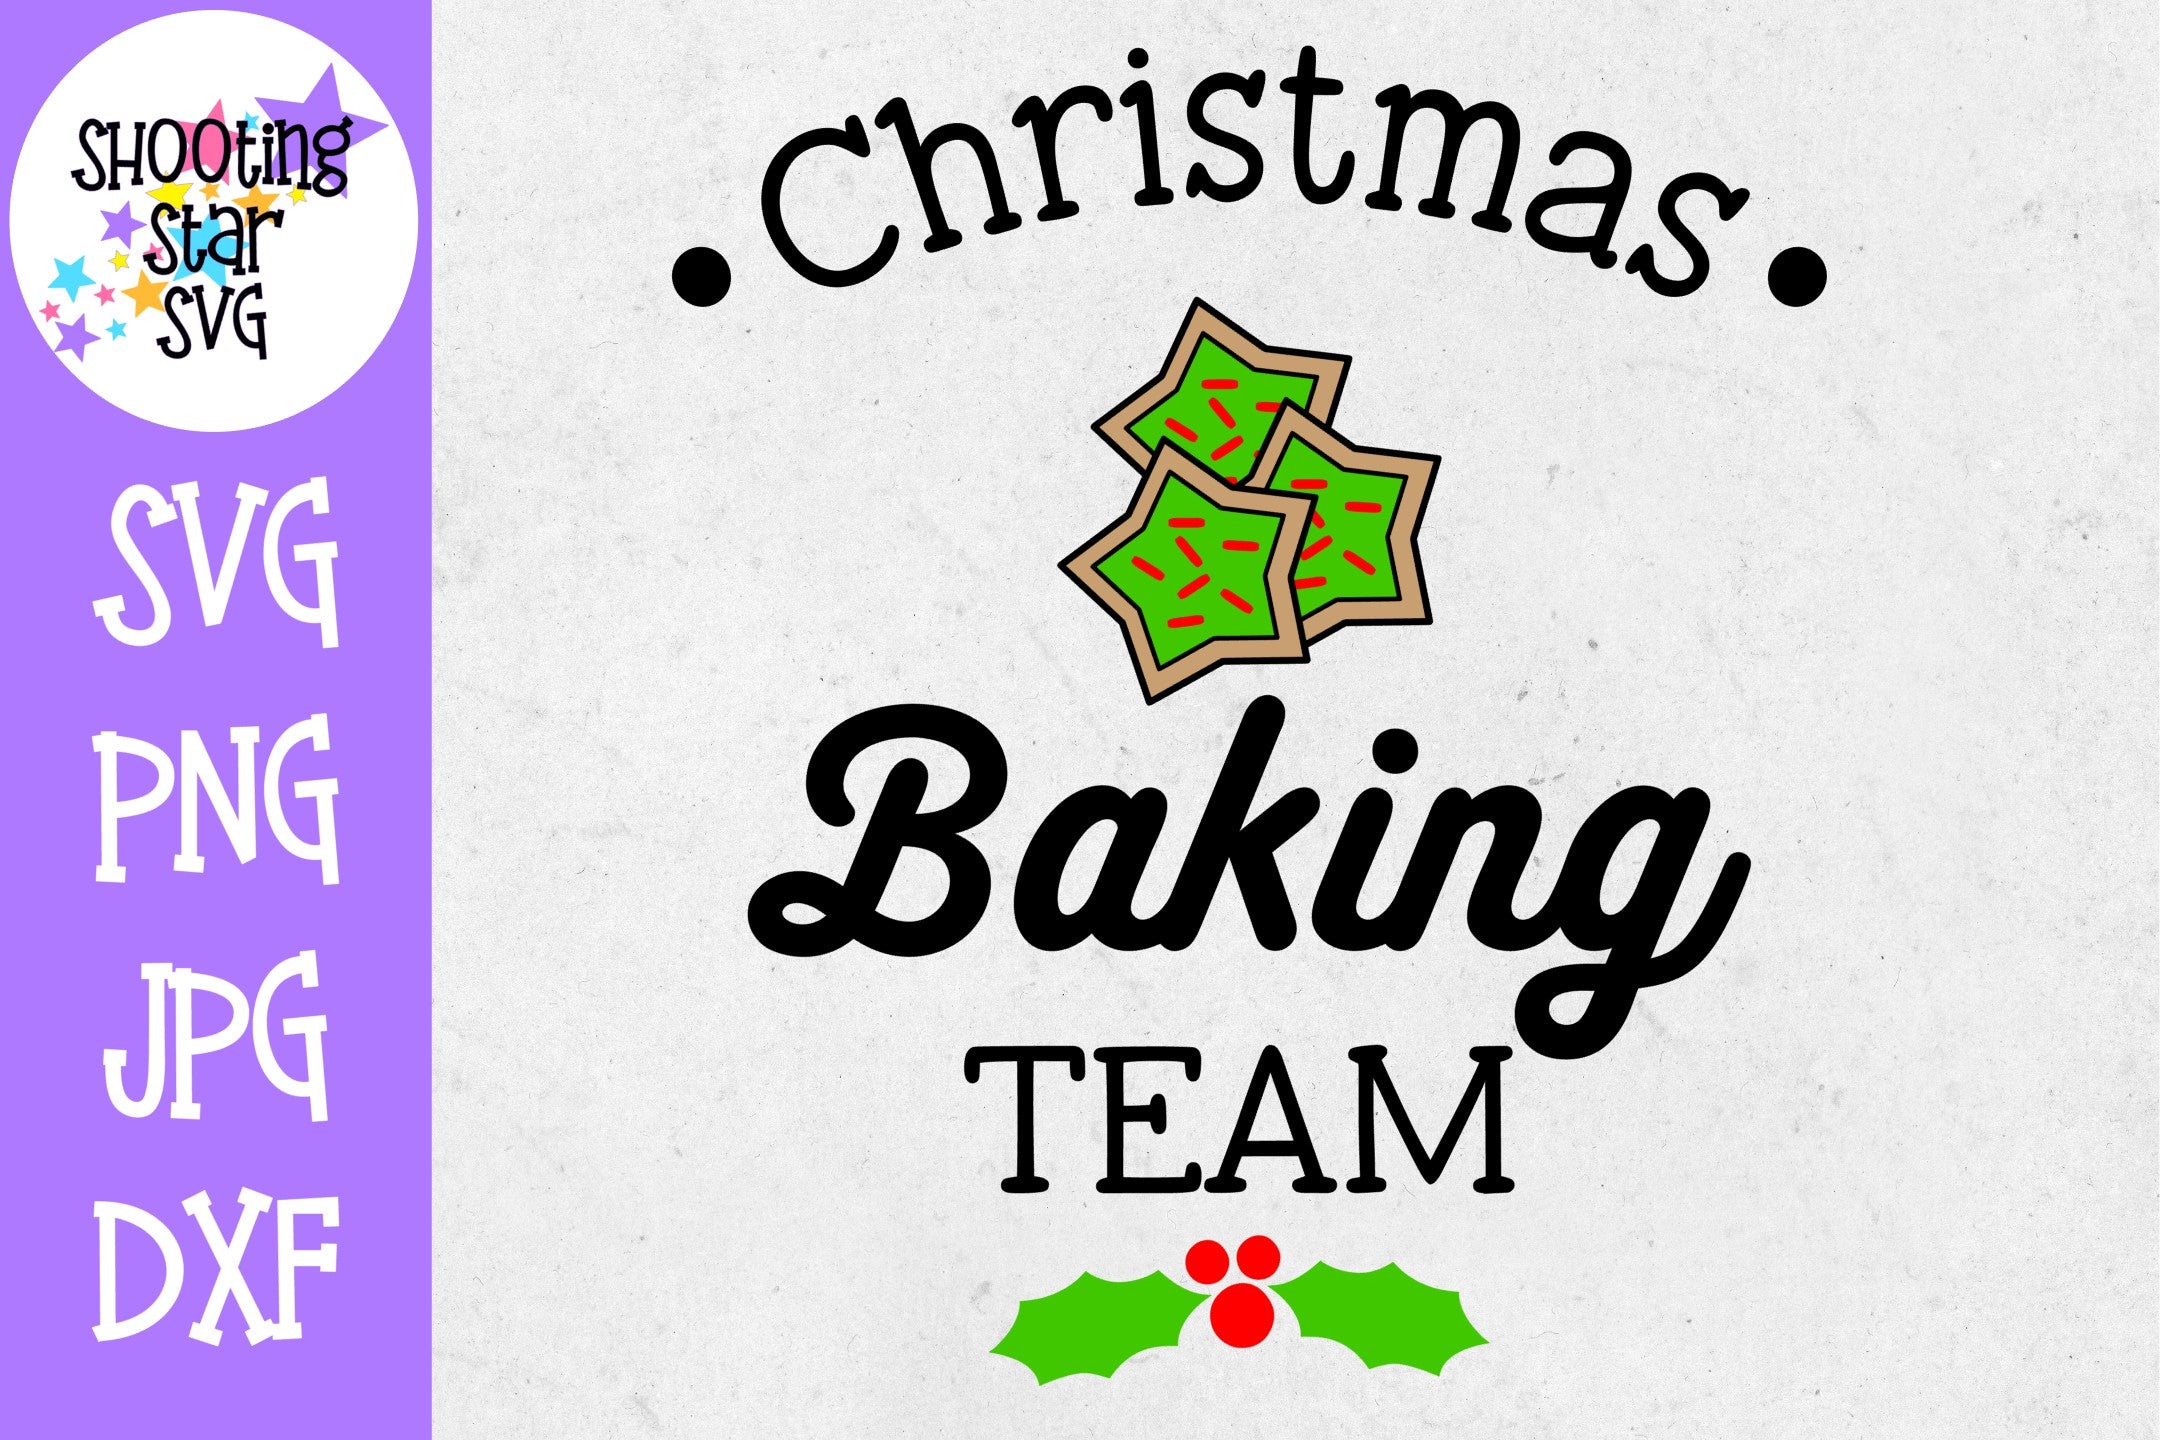 Christmas Baking Team - Christmas SVG